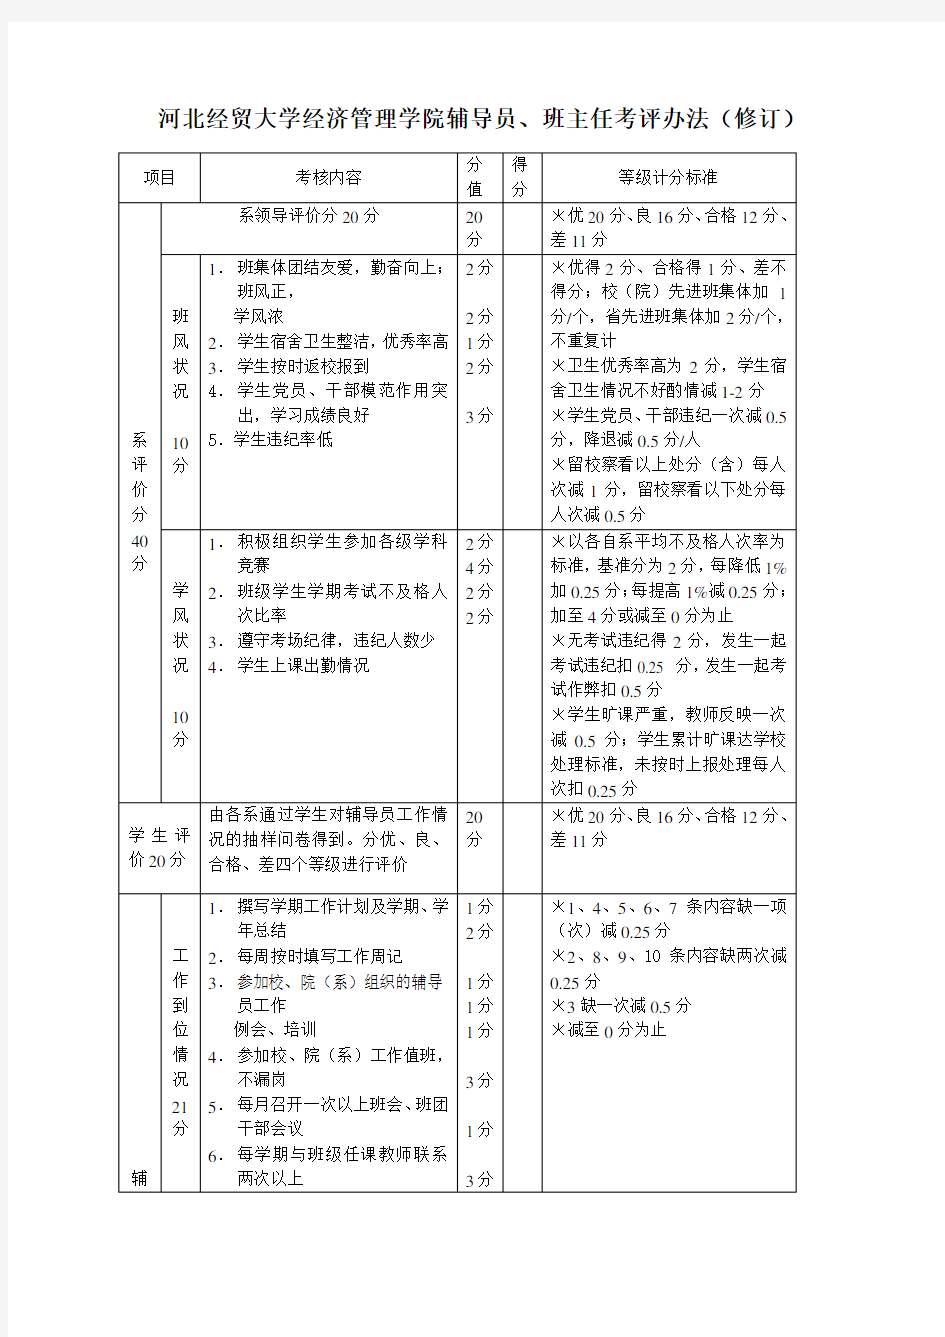 河北经贸大学经济管理学院辅导员、班主任考评办法(修订)